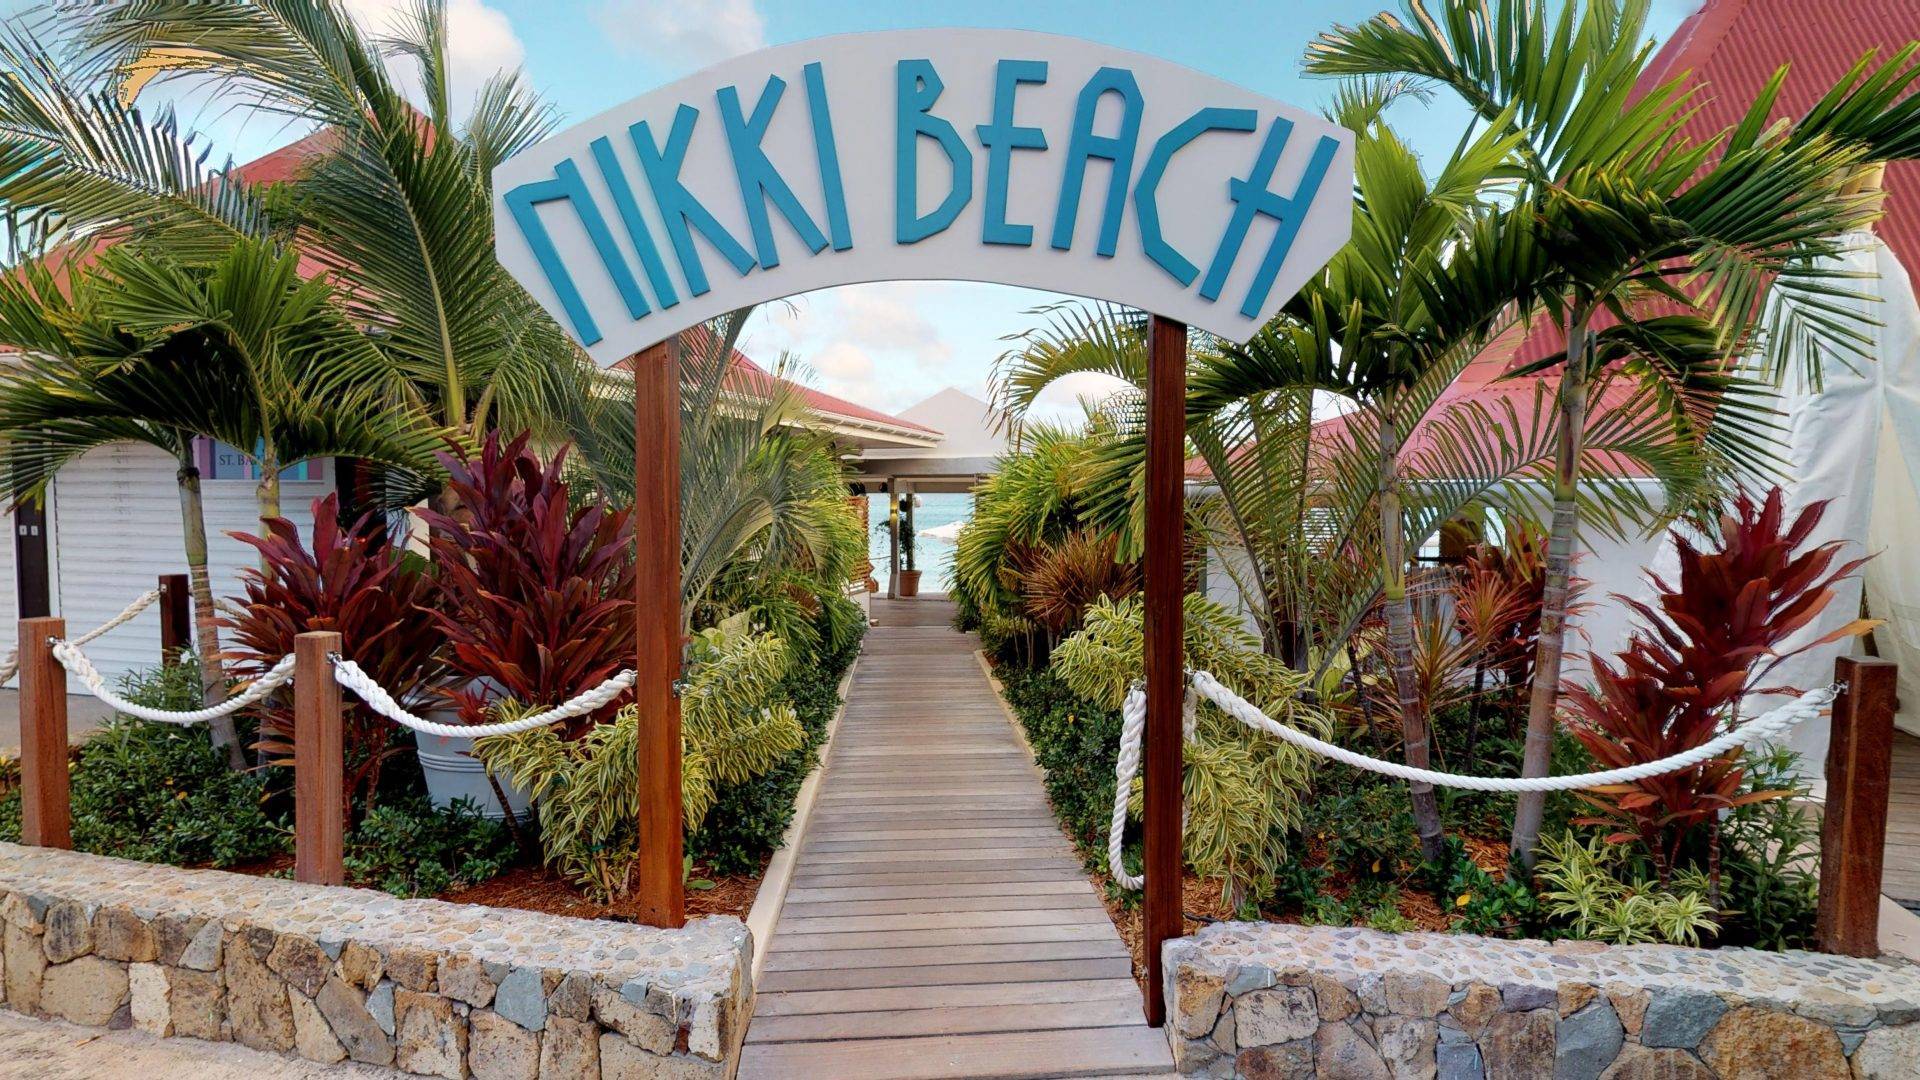 Nikki Beach SB, Restaurant in St Barts, Lunch